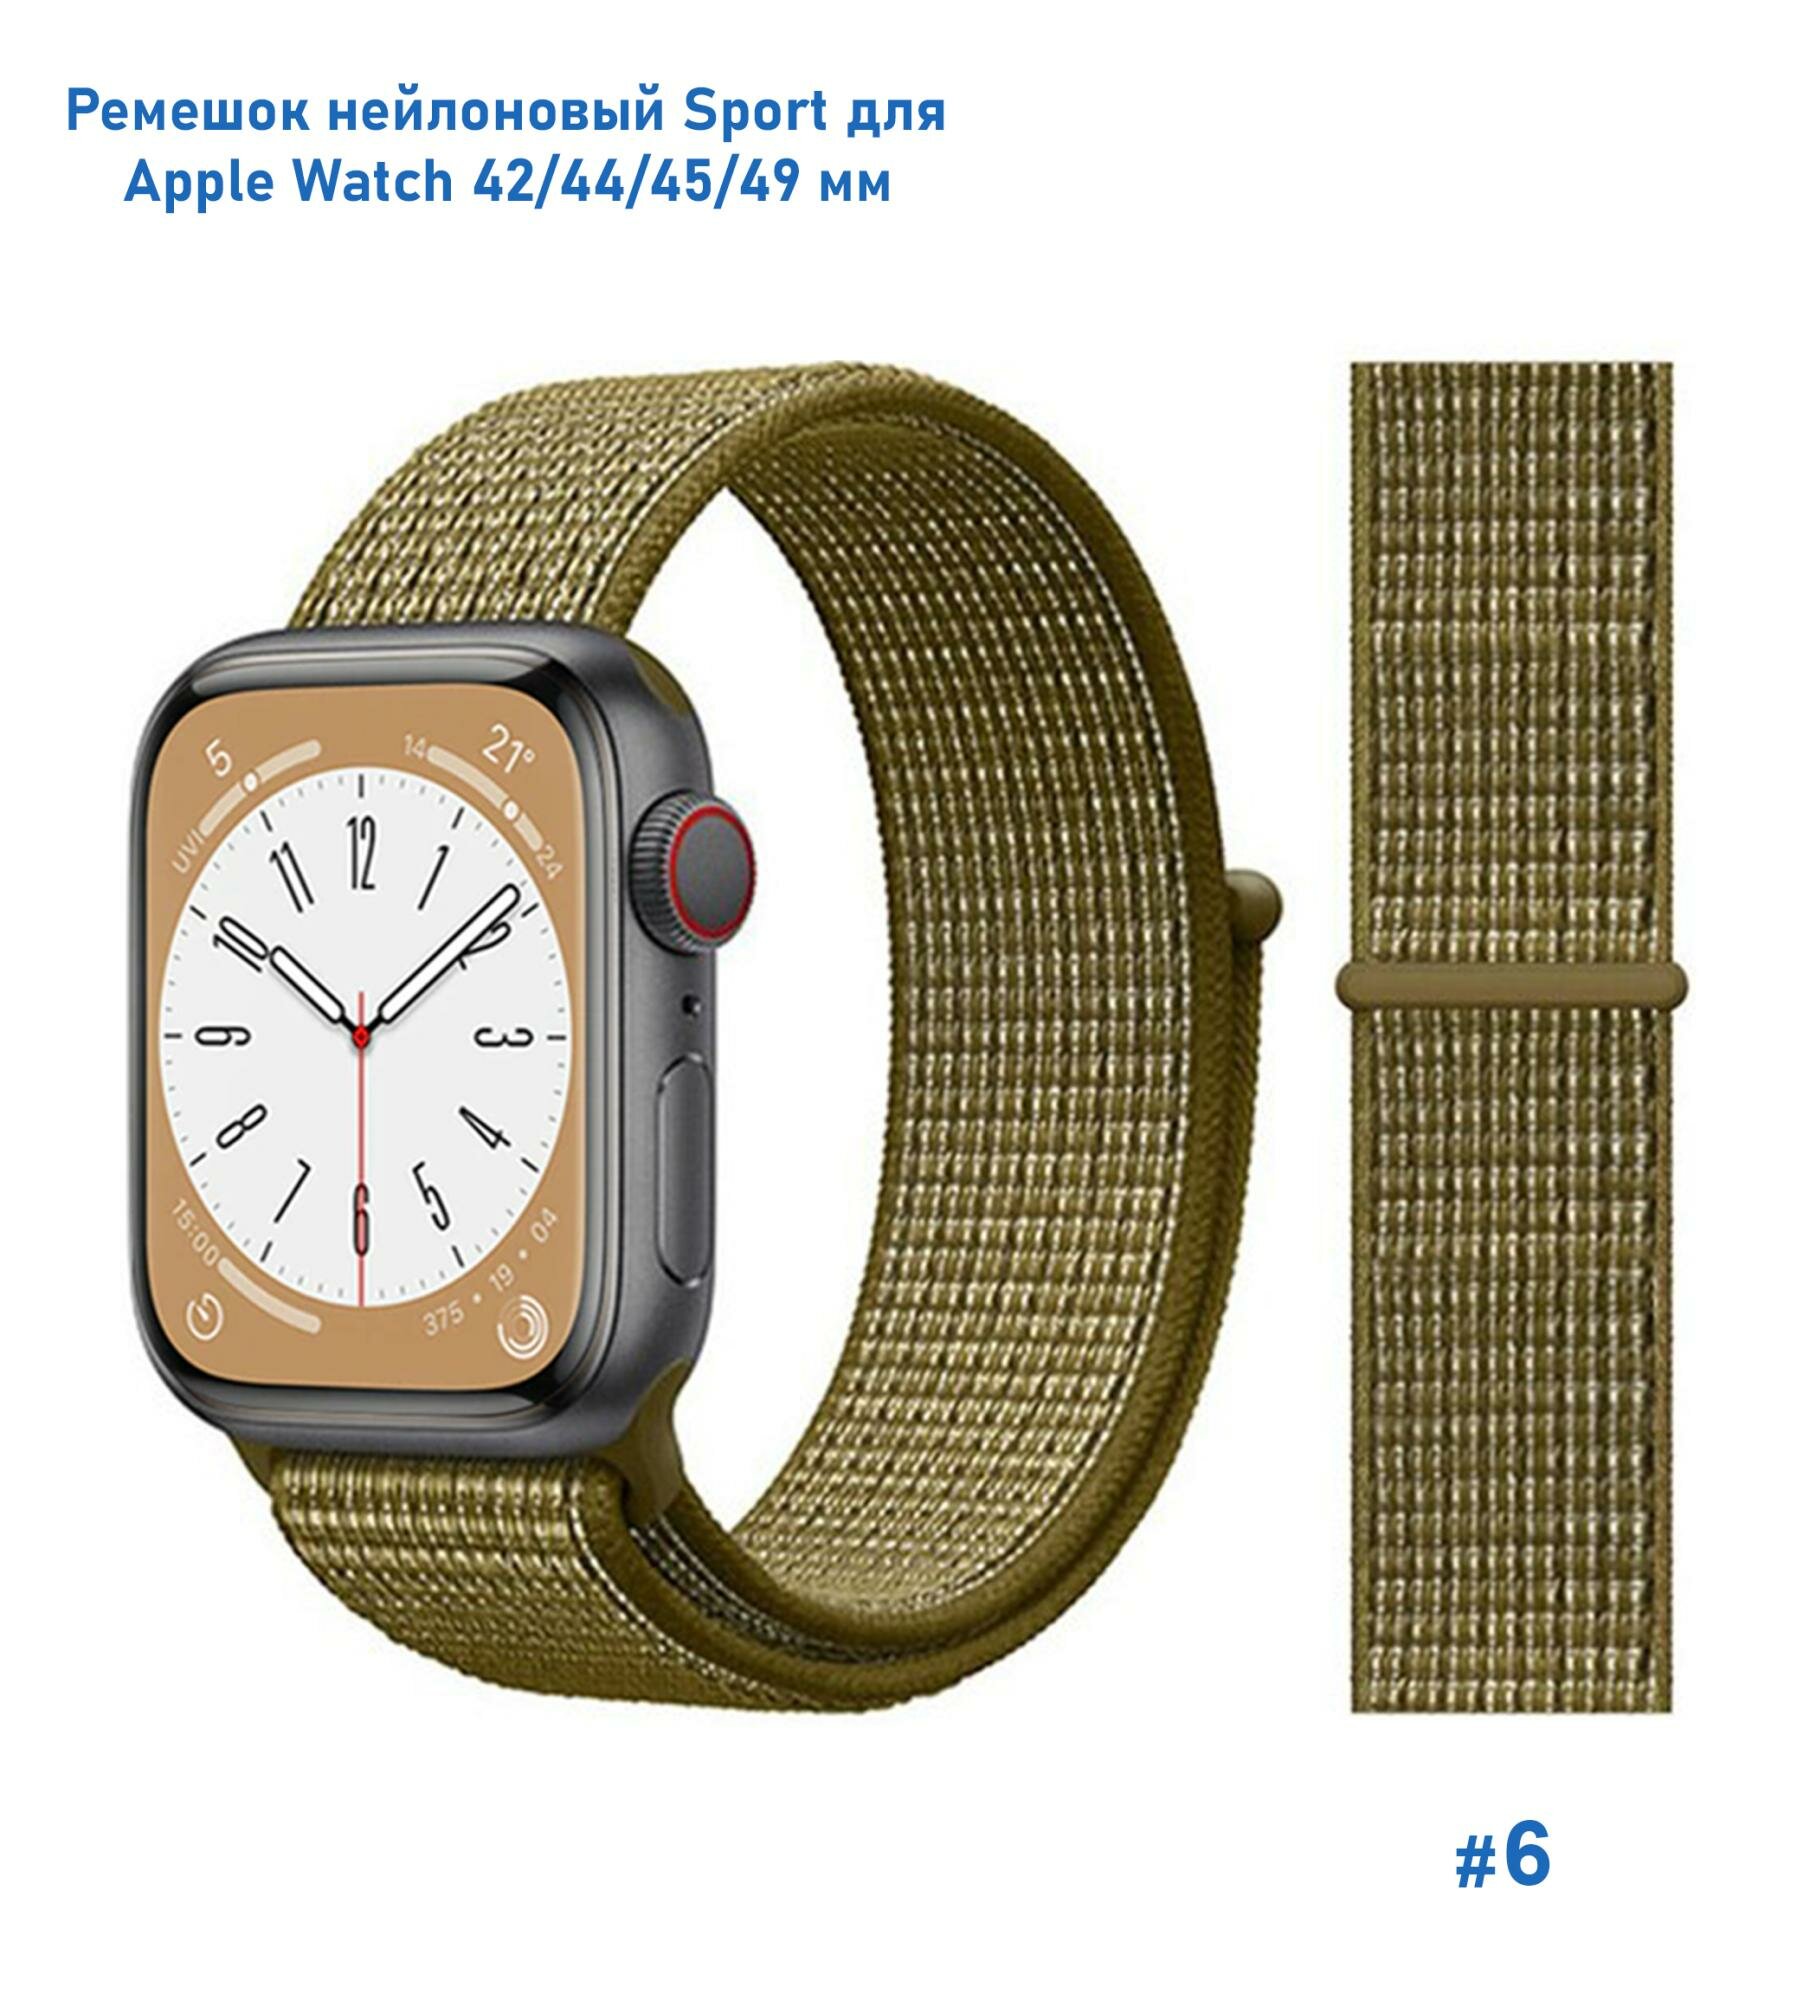 Ремешок нейлоновый Sport для Apple Watch 42/44/45/49 мм, на липучке, зеленый (6)